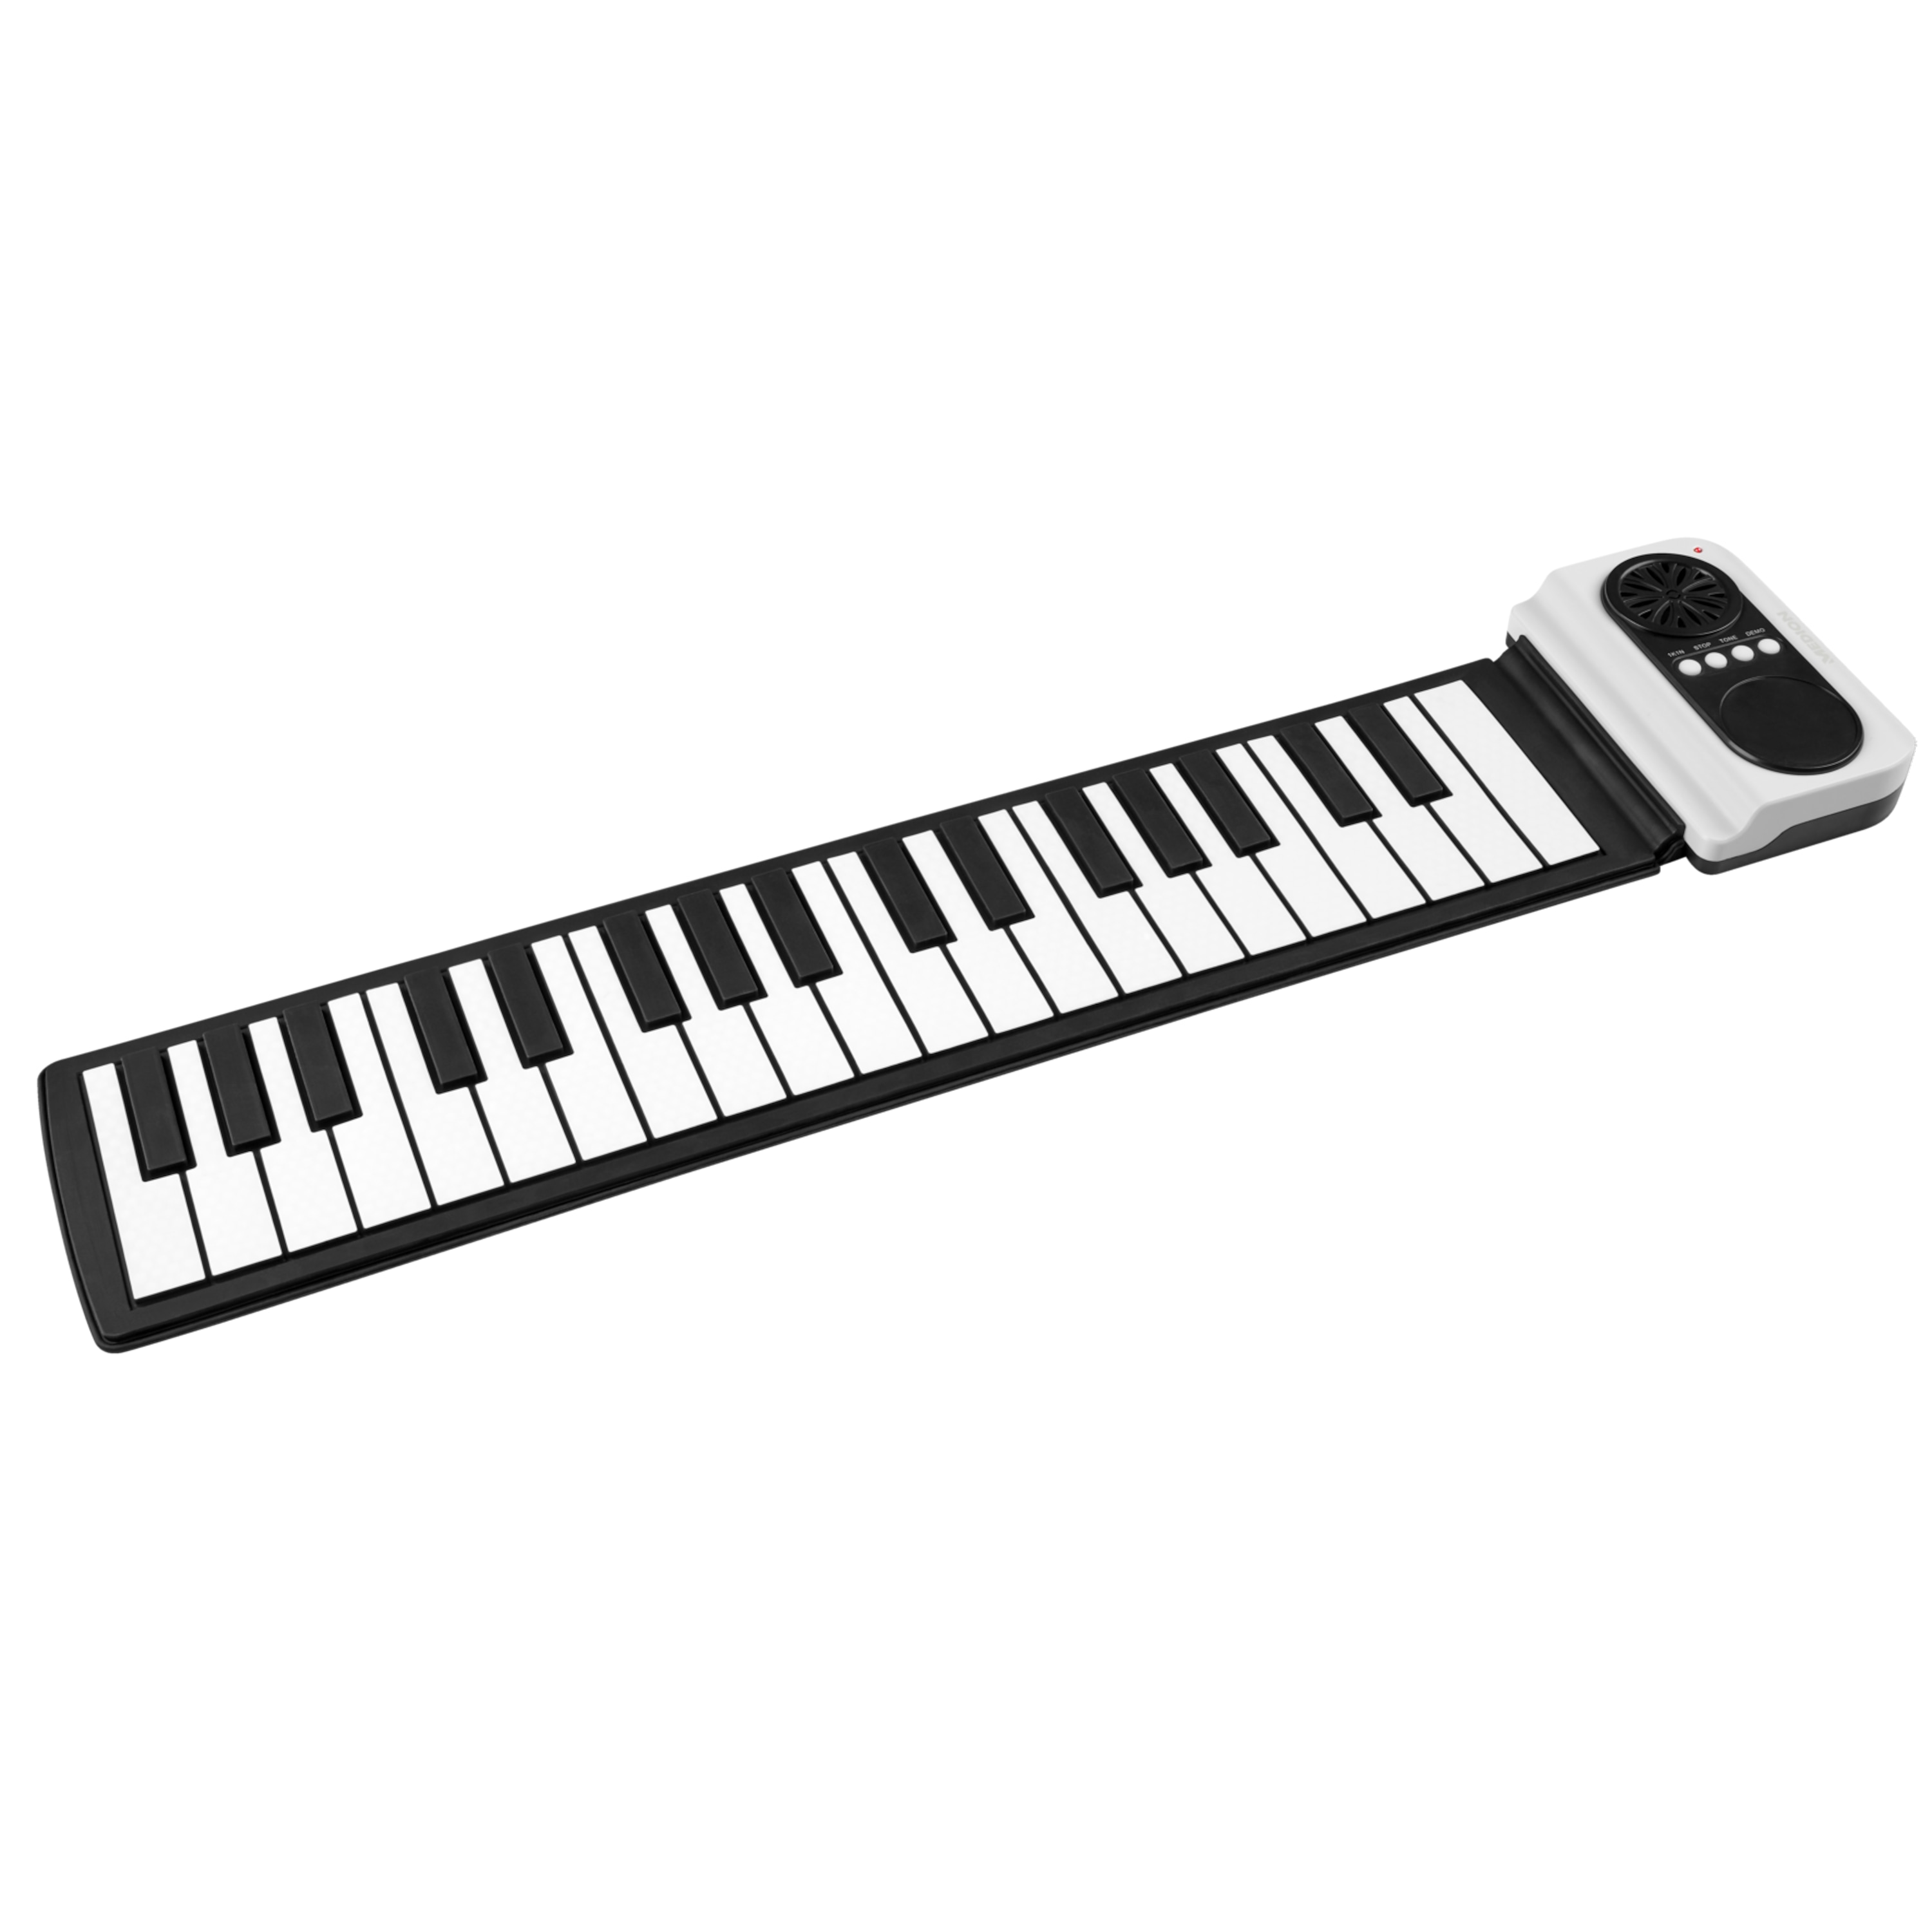 MEDION® S84140 Elektronisches Roll-up Piano, 37 Silikon-Tasten, integrierter Lautsprecher, Kopfhörerausgang, idealer Begleiter für Musik unterwegs